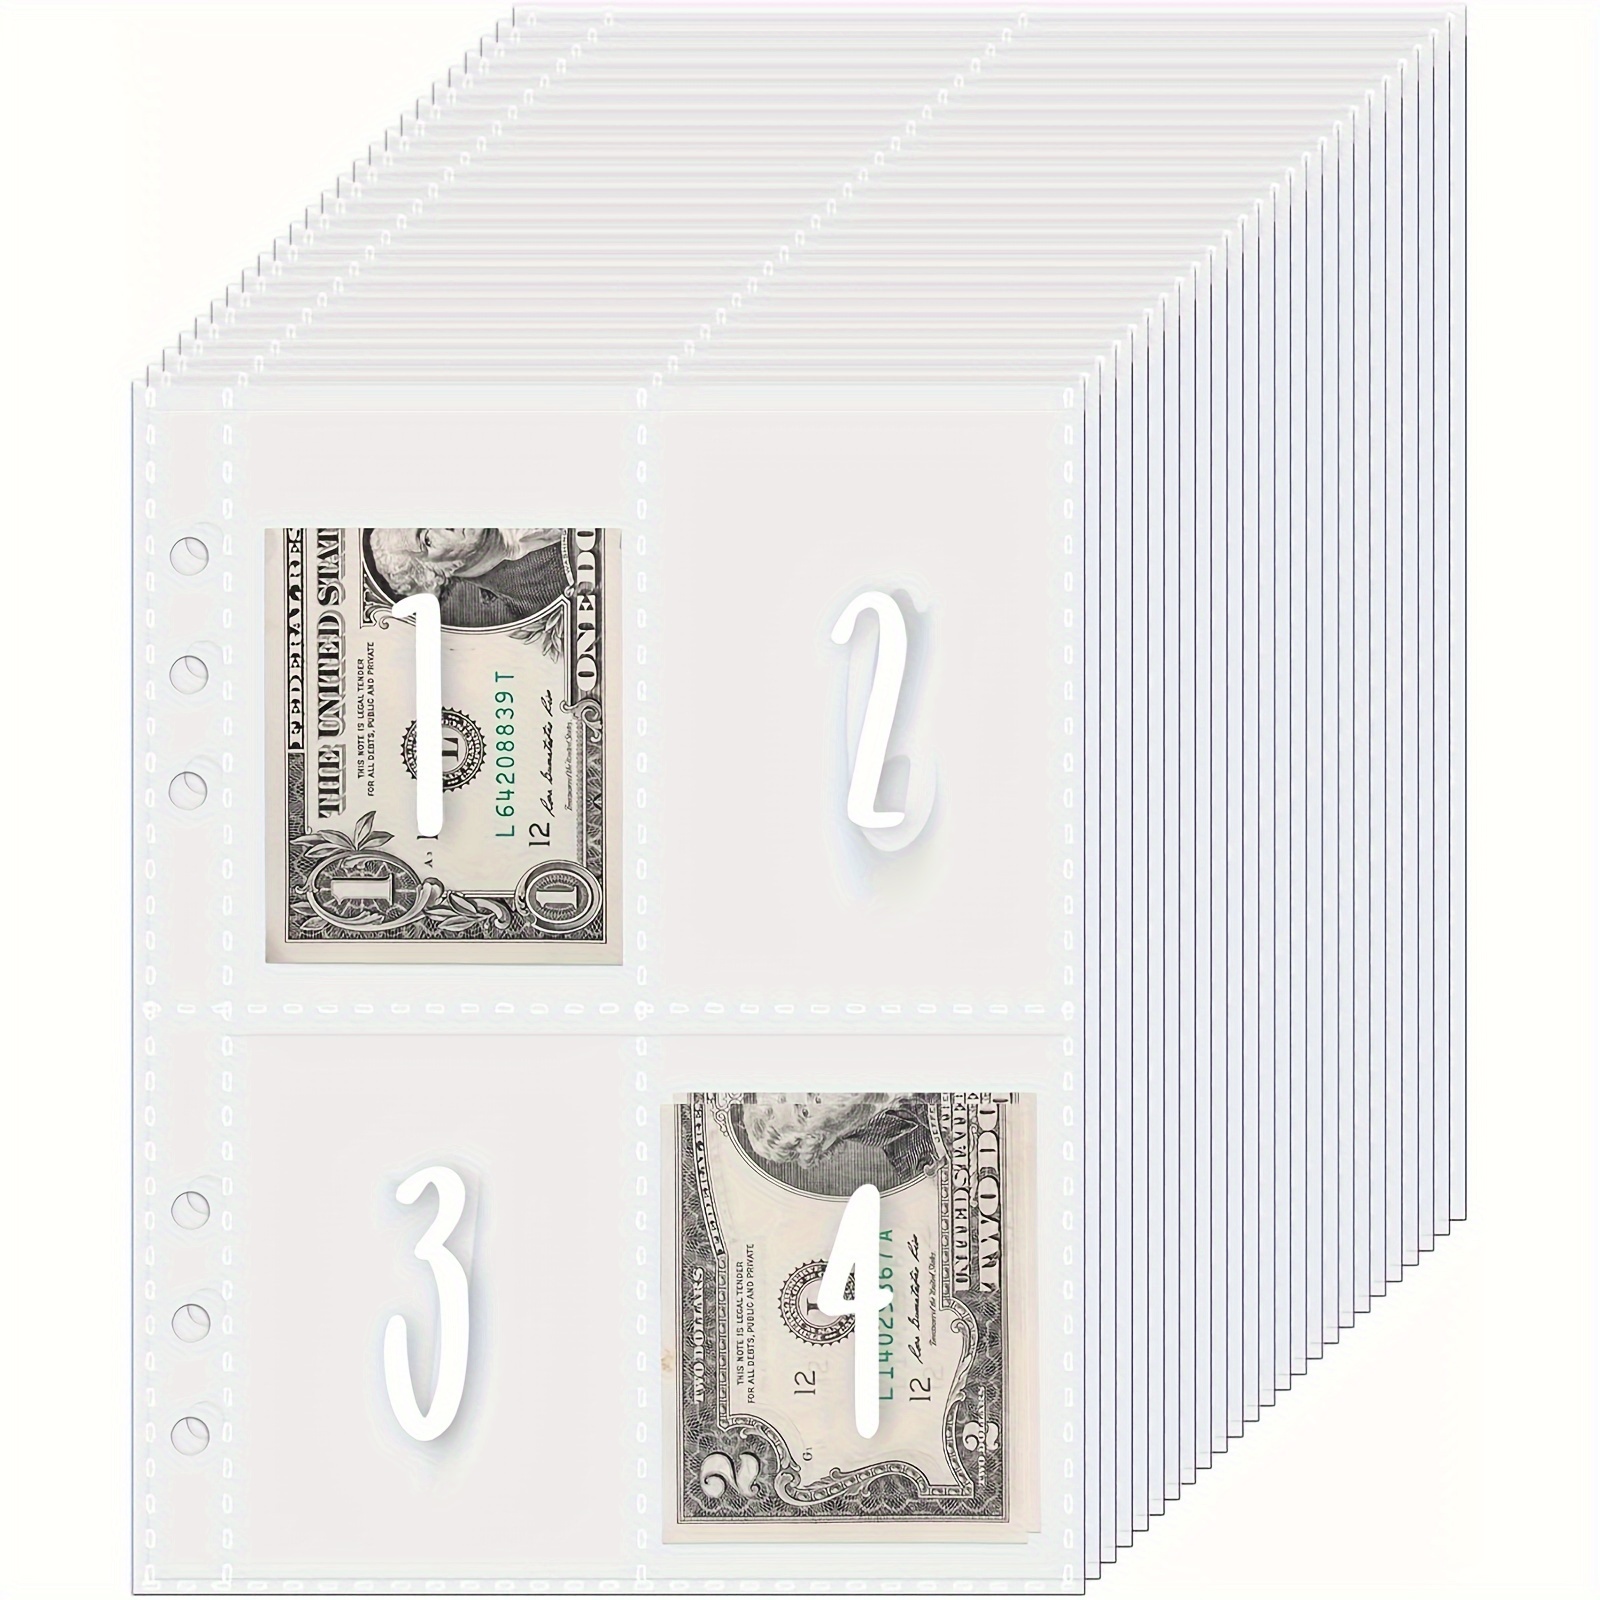 

100 Envelopes For A5 6-ring Binder, A5 Binder Inserts, Pre-printed 1-100 Cash Filled Envelopes, Money Bags, Planner Insert, Cash Transparent Cover, 25 Sheets